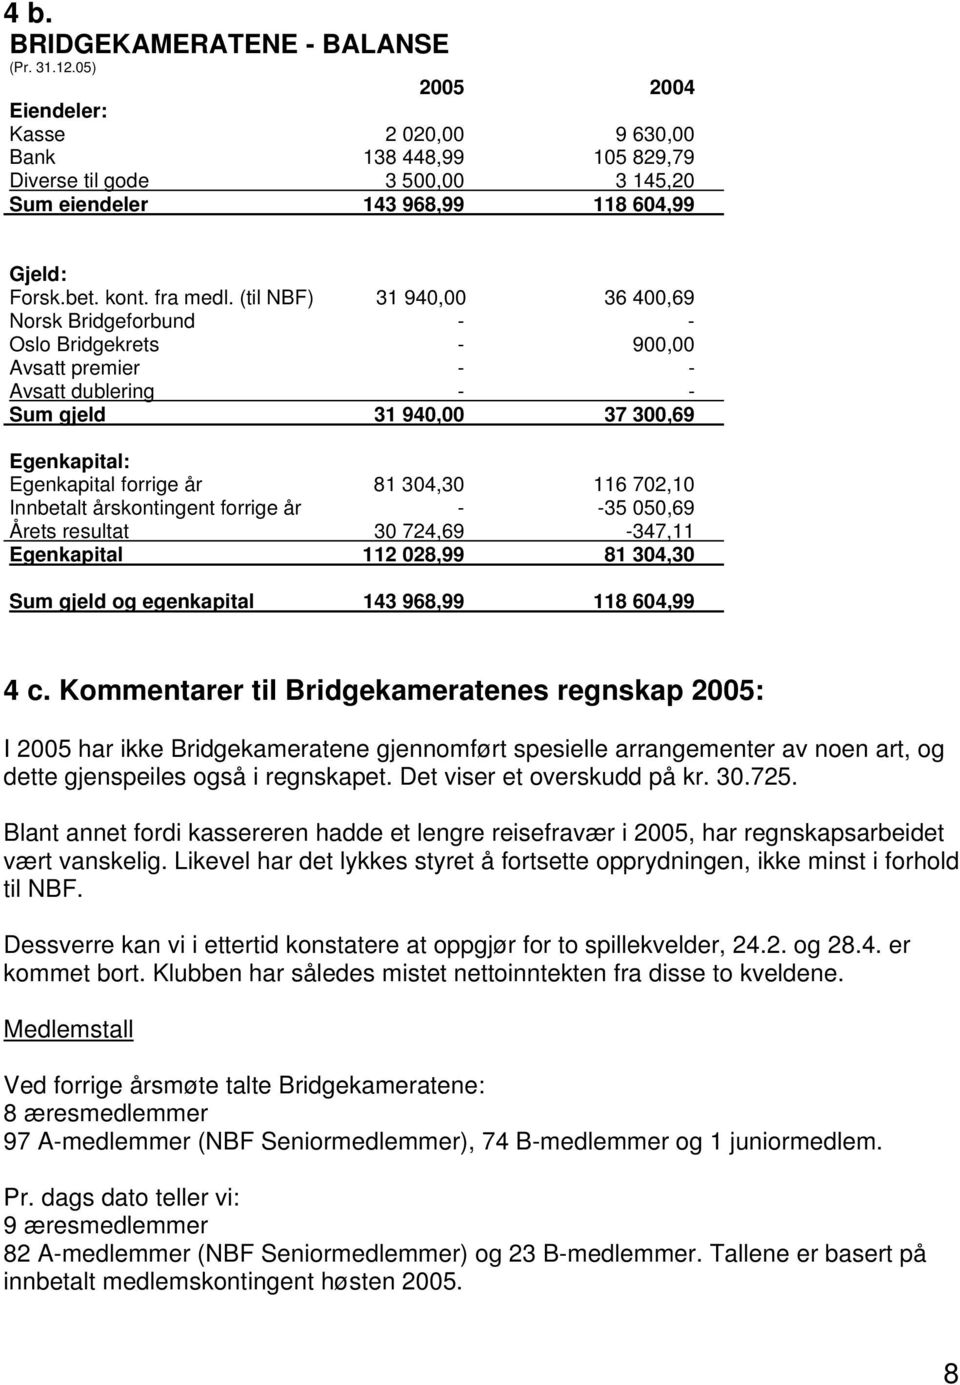 (til NBF) 31 940,00 36 400,69 Norsk Bridgeforbund - - Oslo Bridgekrets - 900,00 Avsatt premier - - Avsatt dublering - - Sum gjeld 31 940,00 37 300,69 Egenkapital: Egenkapital forrige år 81 304,30 116